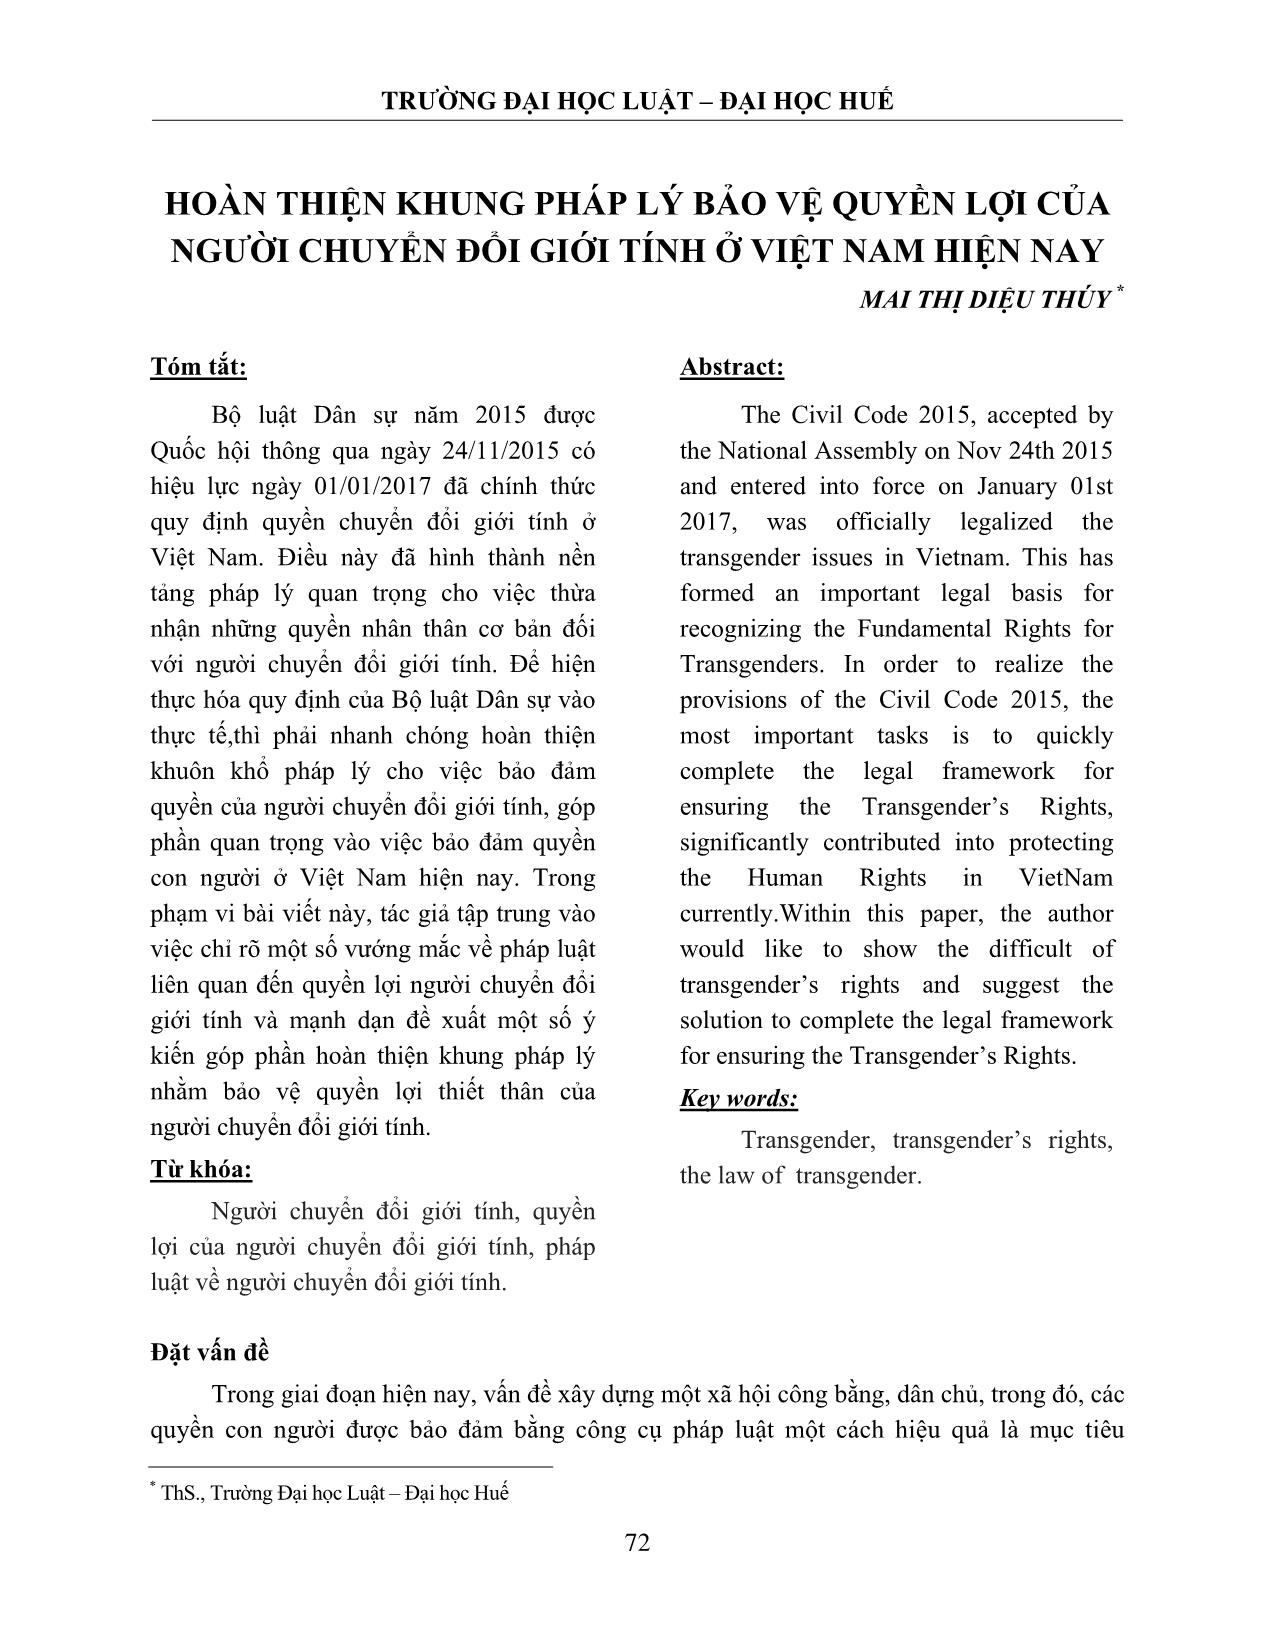 Hoàn thiện khung pháp lý bảo vệ quyền lợi của người chuyển đổi giới tính ở Việt Nam hiện nay trang 1